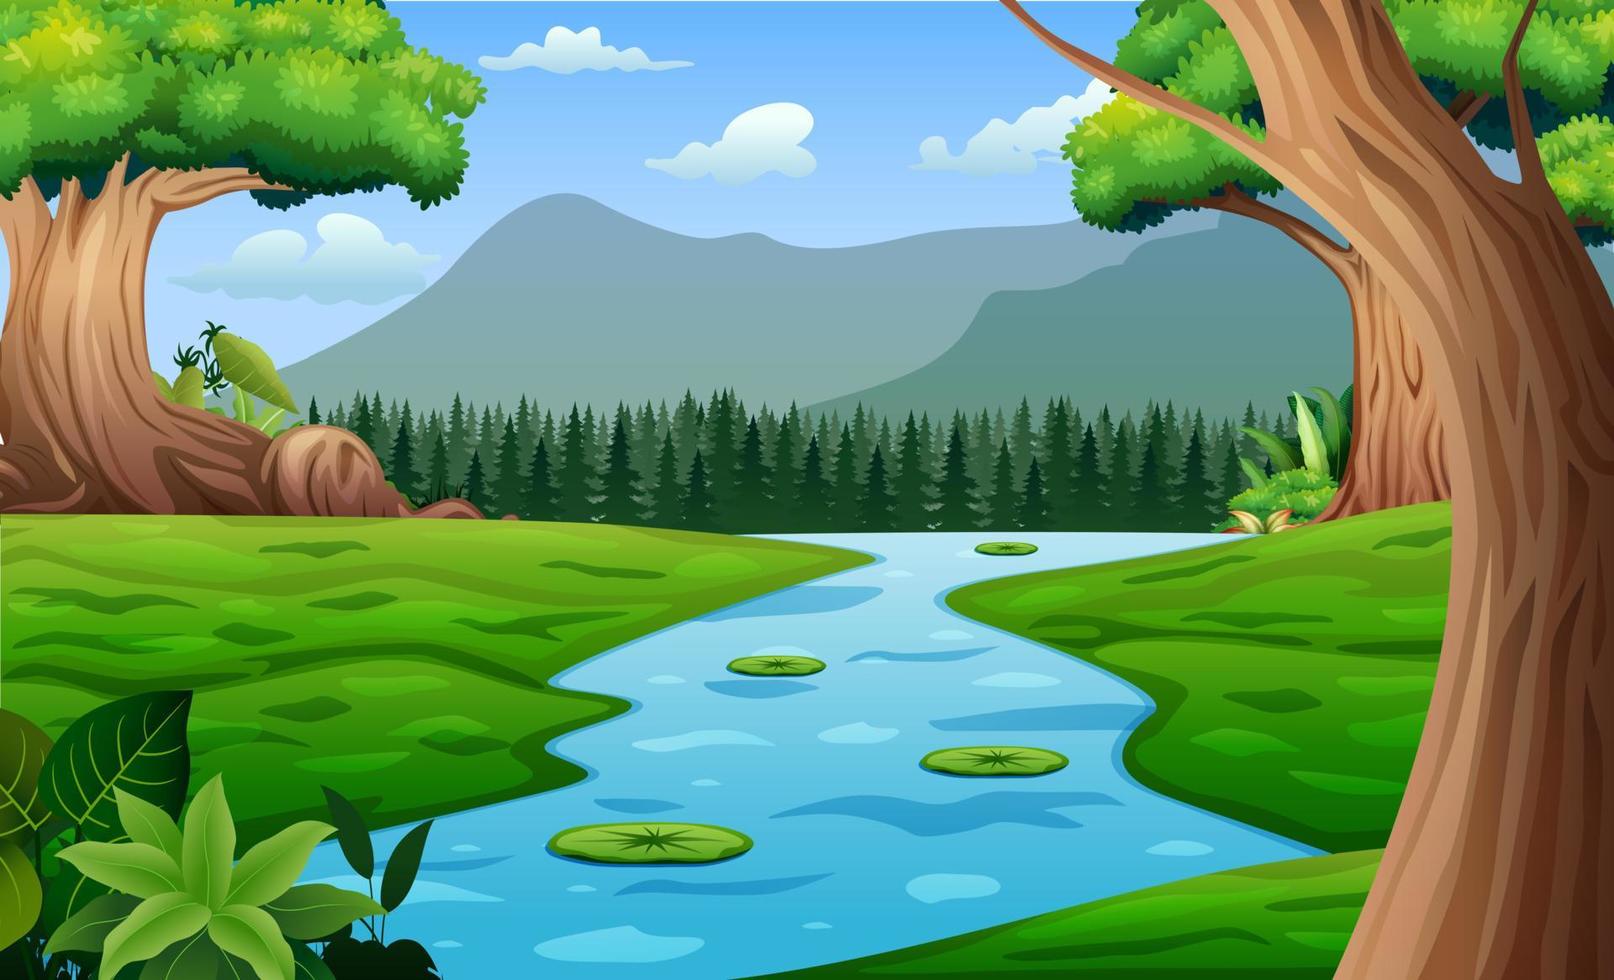 natuur boslandschap met rivier die door de weide stroomt illustratie vector